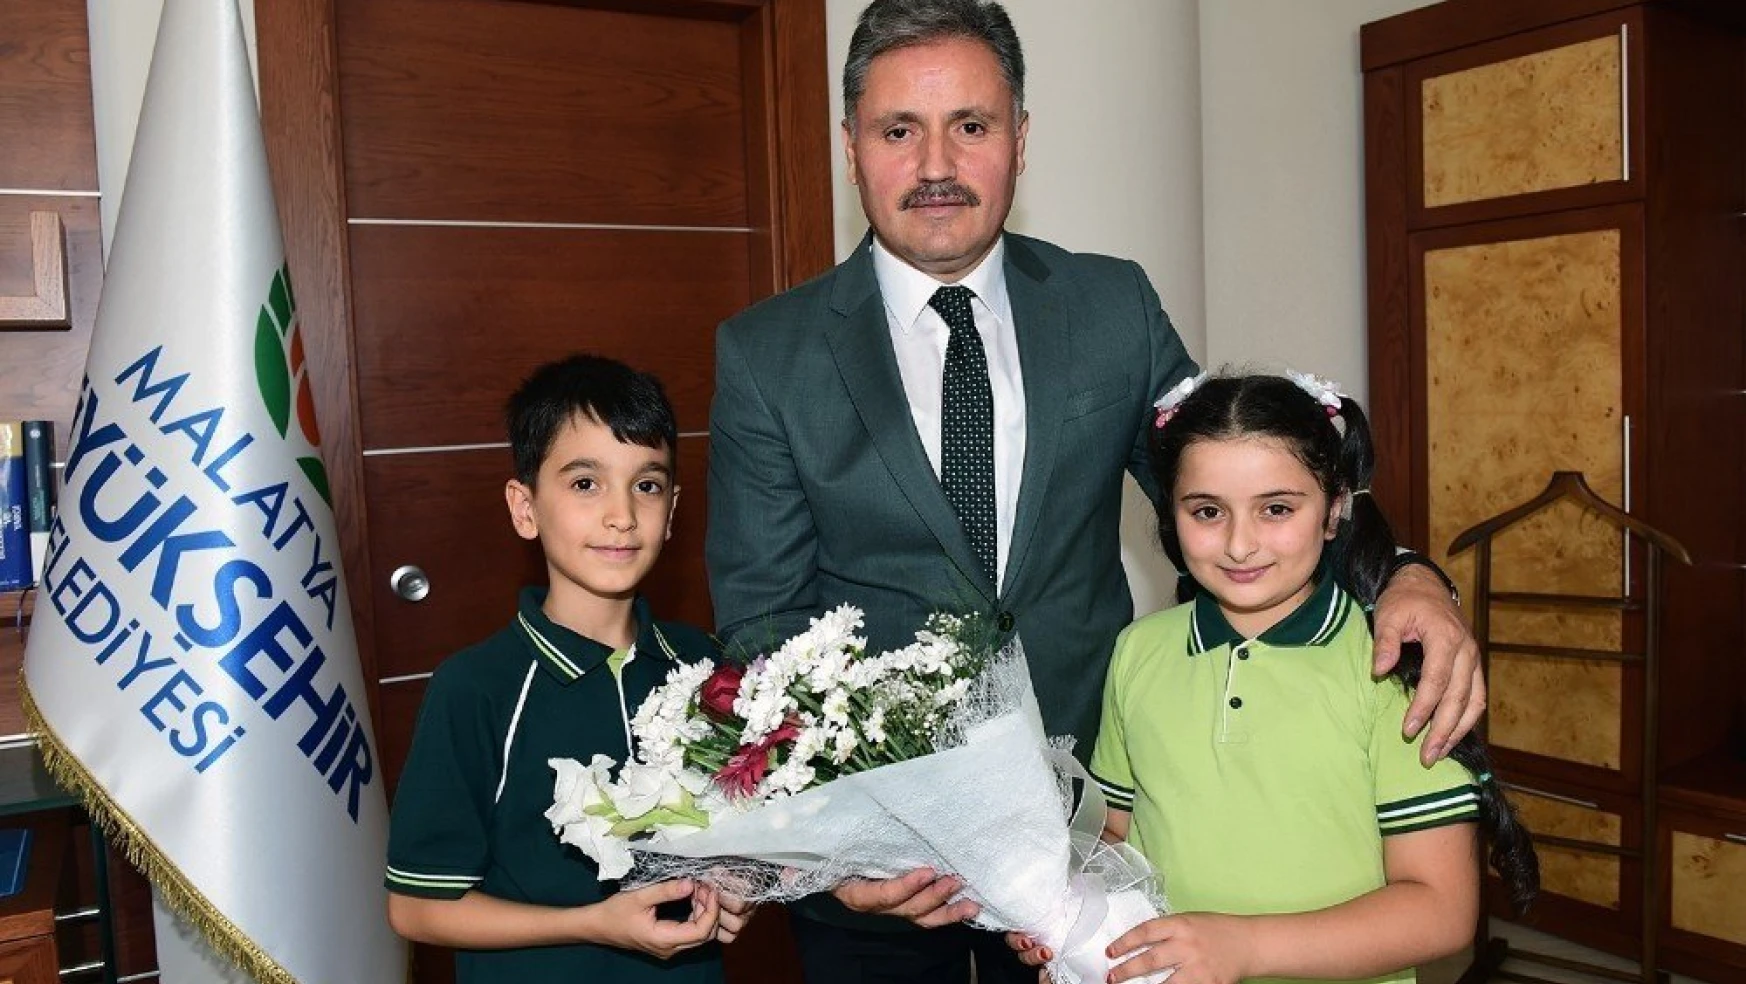 Malatya Büyükşehir Belediye Başkanı Ahmet Çakır:
